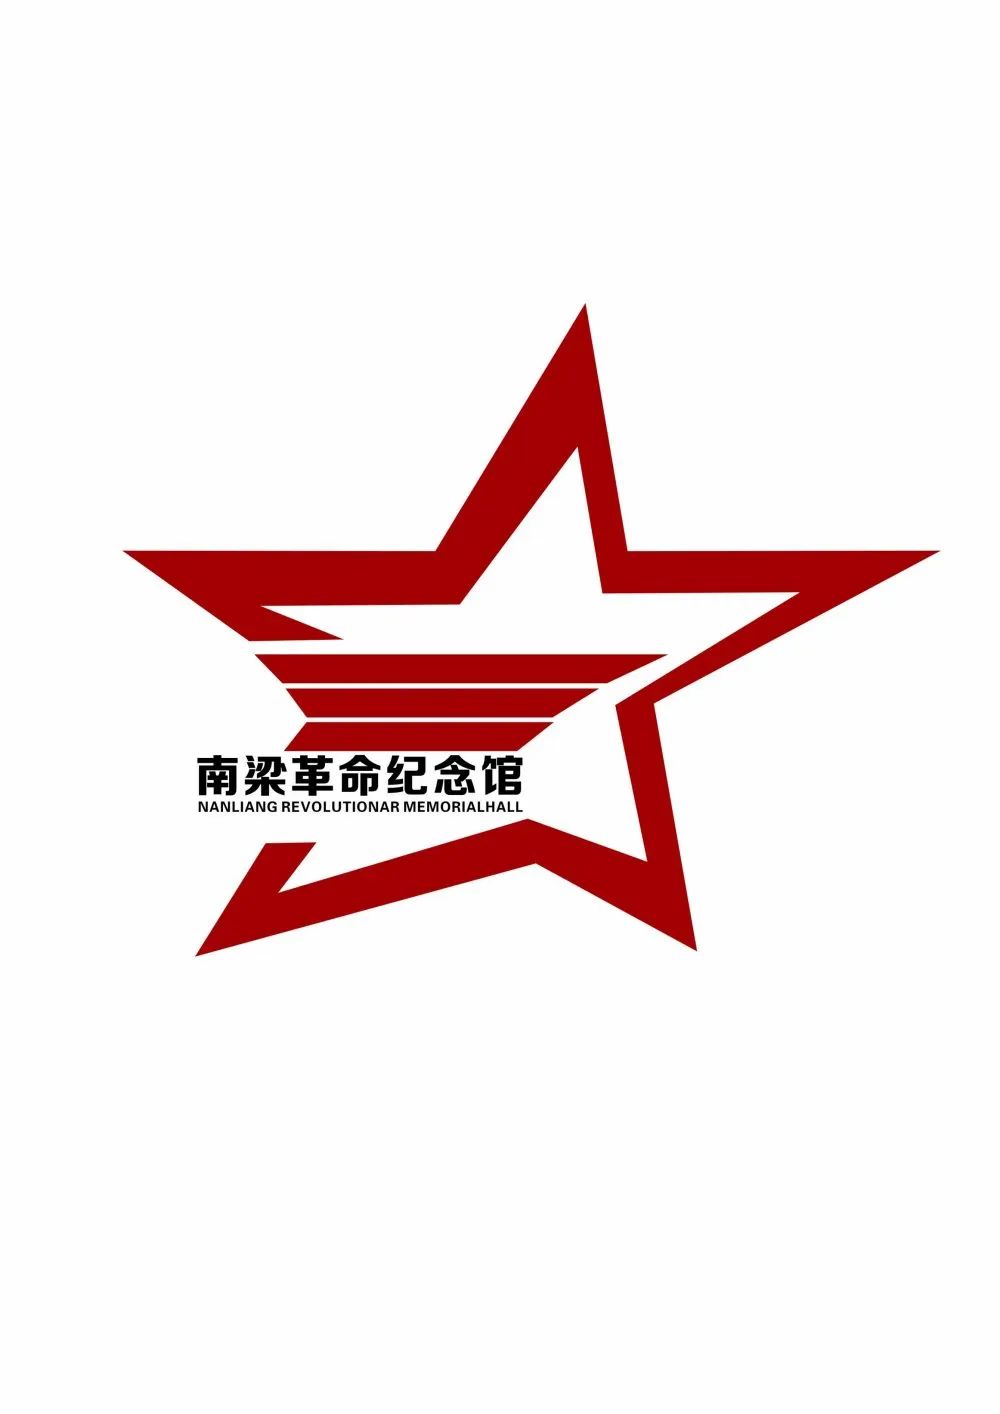 南梁革命纪念馆馆标logo征集结果正式揭晓